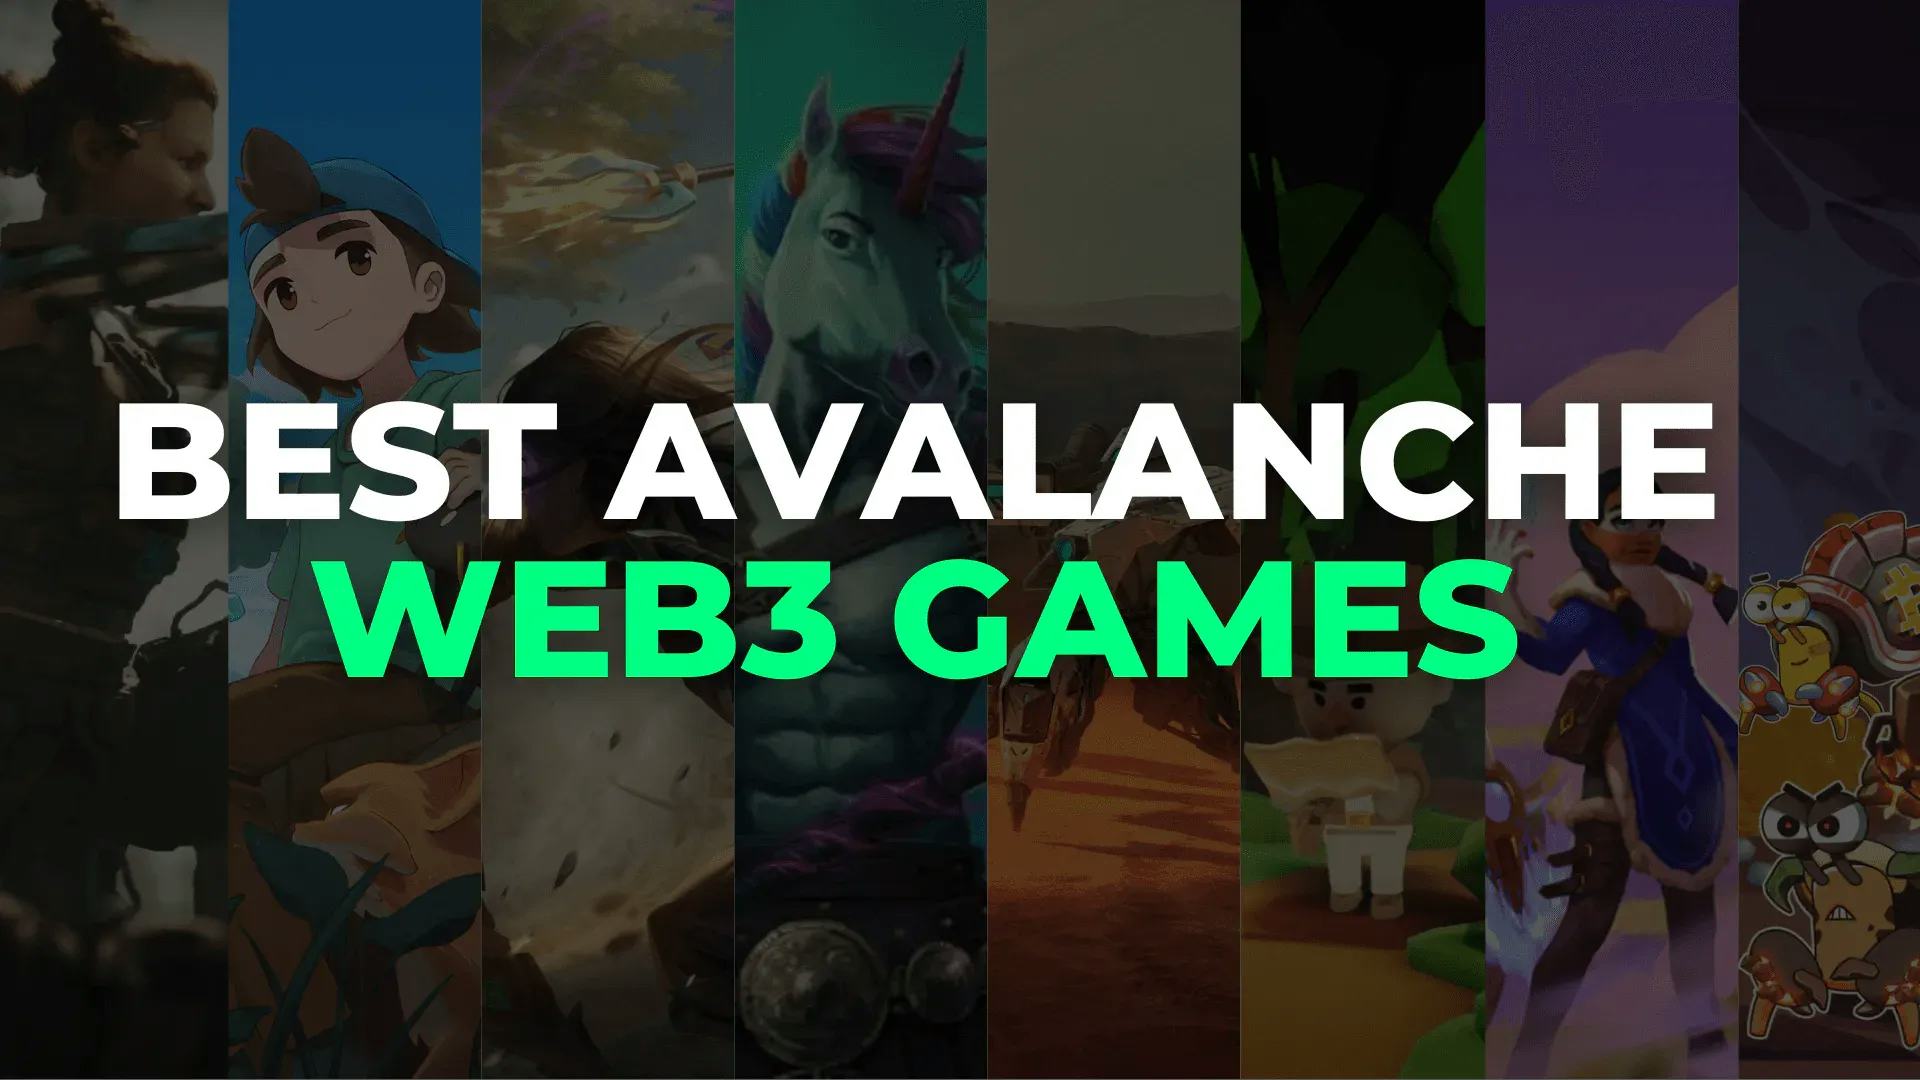 Best Avalanche Web3 Games.webp